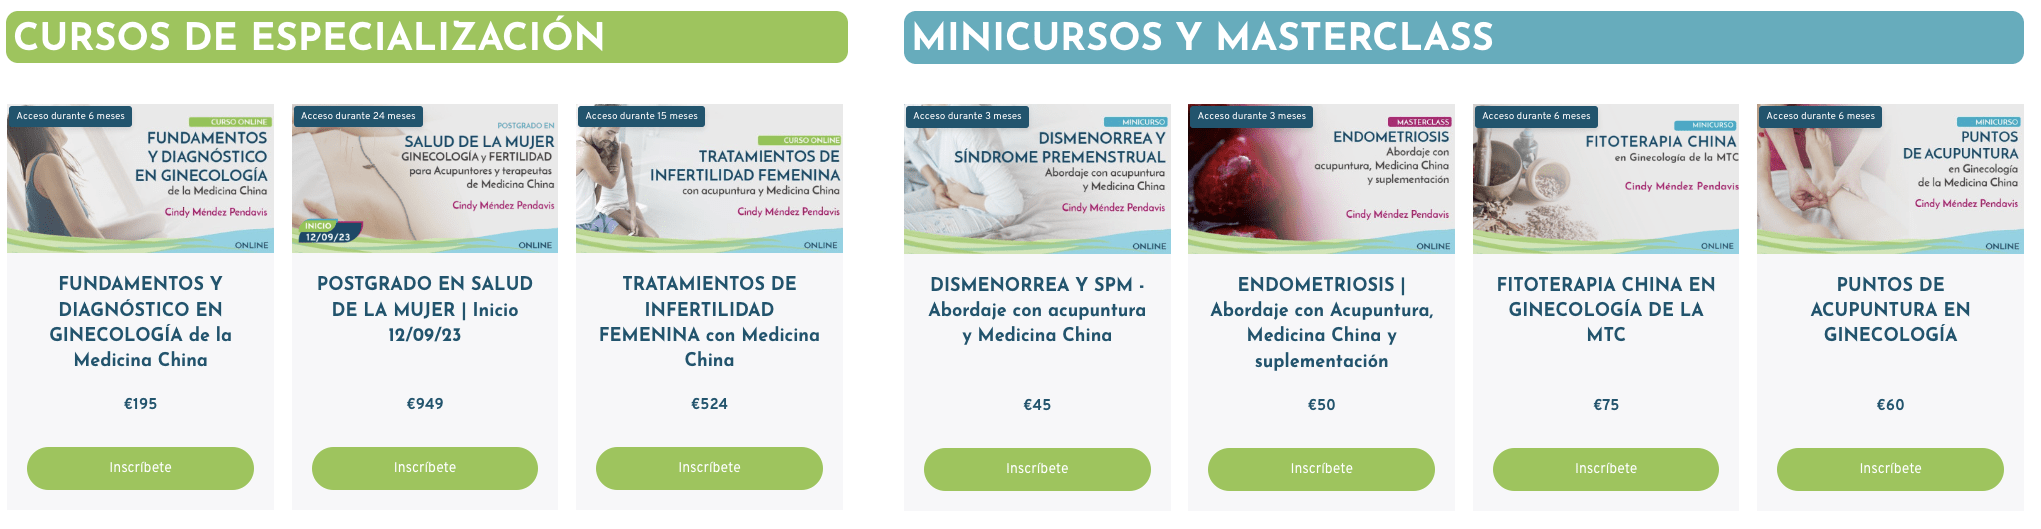 Cursos y mini cursos online en salud de la mujer con acupuntura y medicina china disponibles en Meridianspro